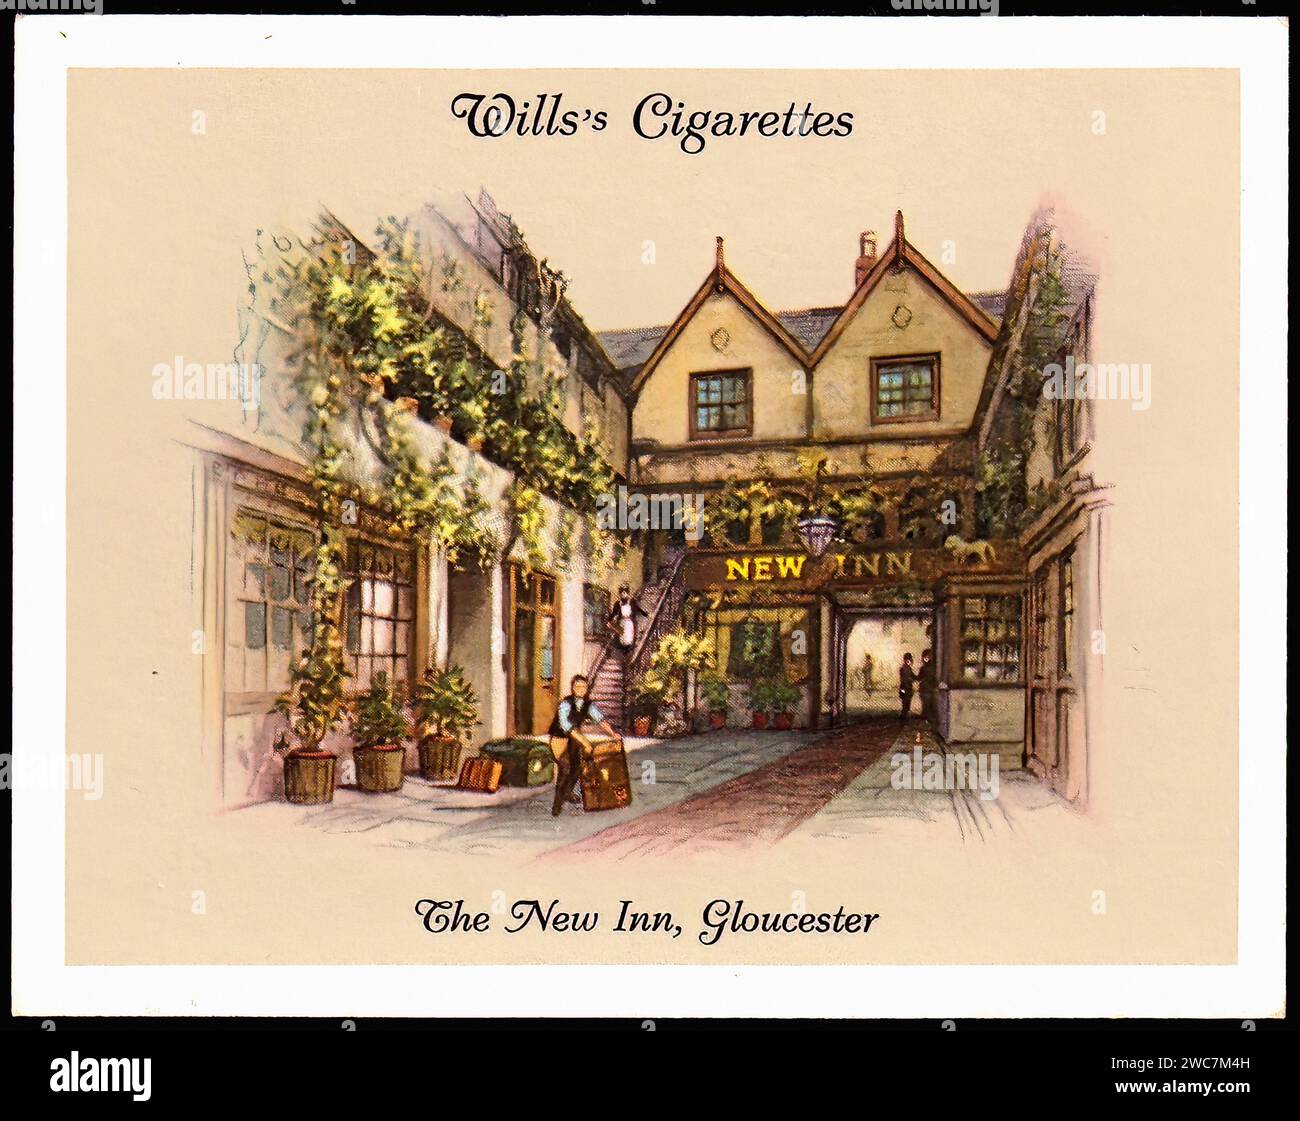 The New Inn Gloucester - Vintage Cigarette Card Illustration Stock Photo